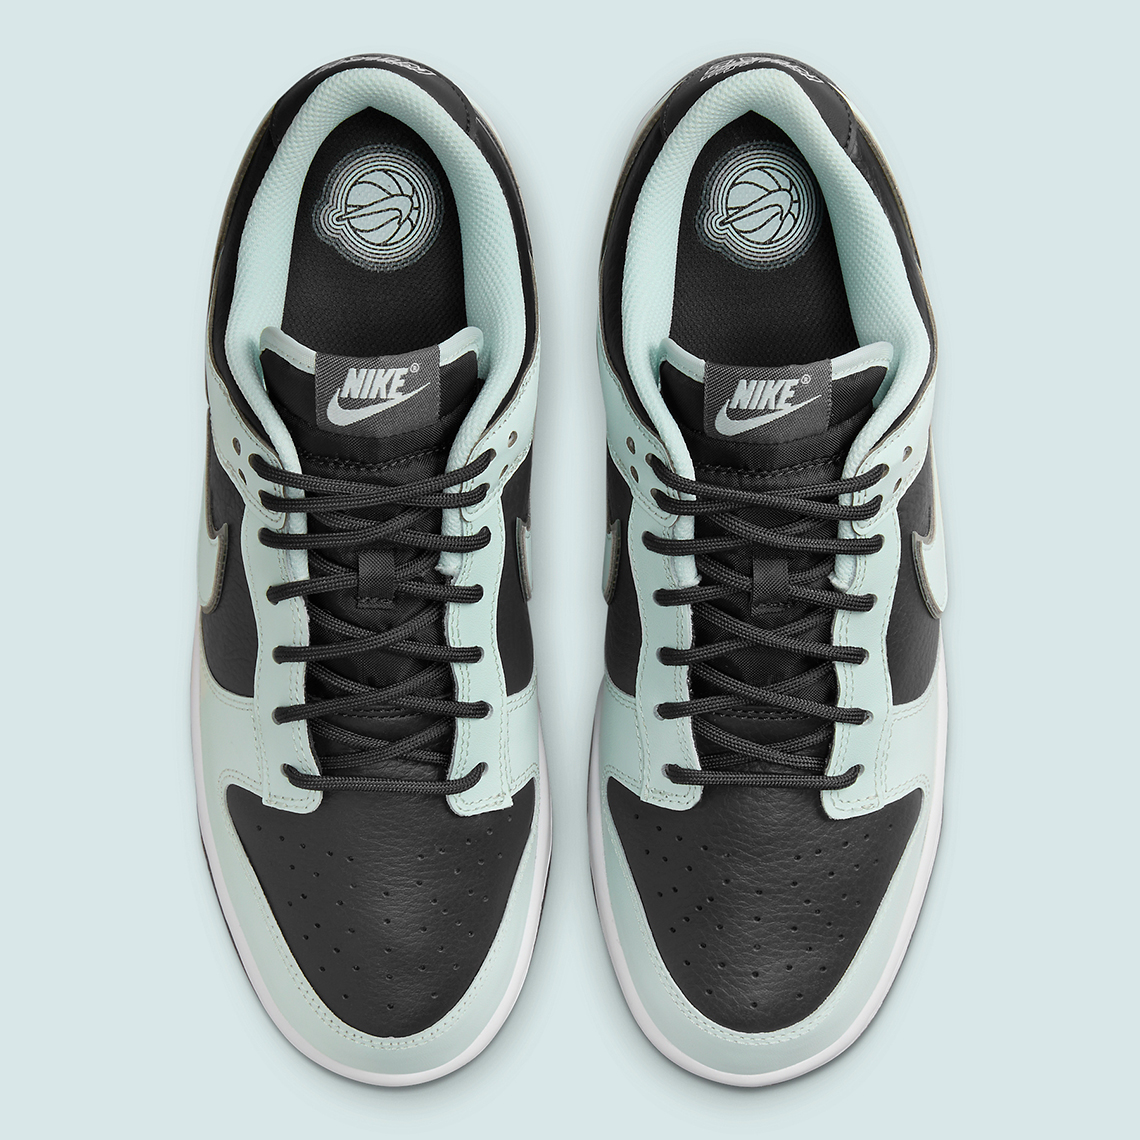 Nike Dunk Low Prm Dark Smoke Grey Barely Green Fz1670 001 9